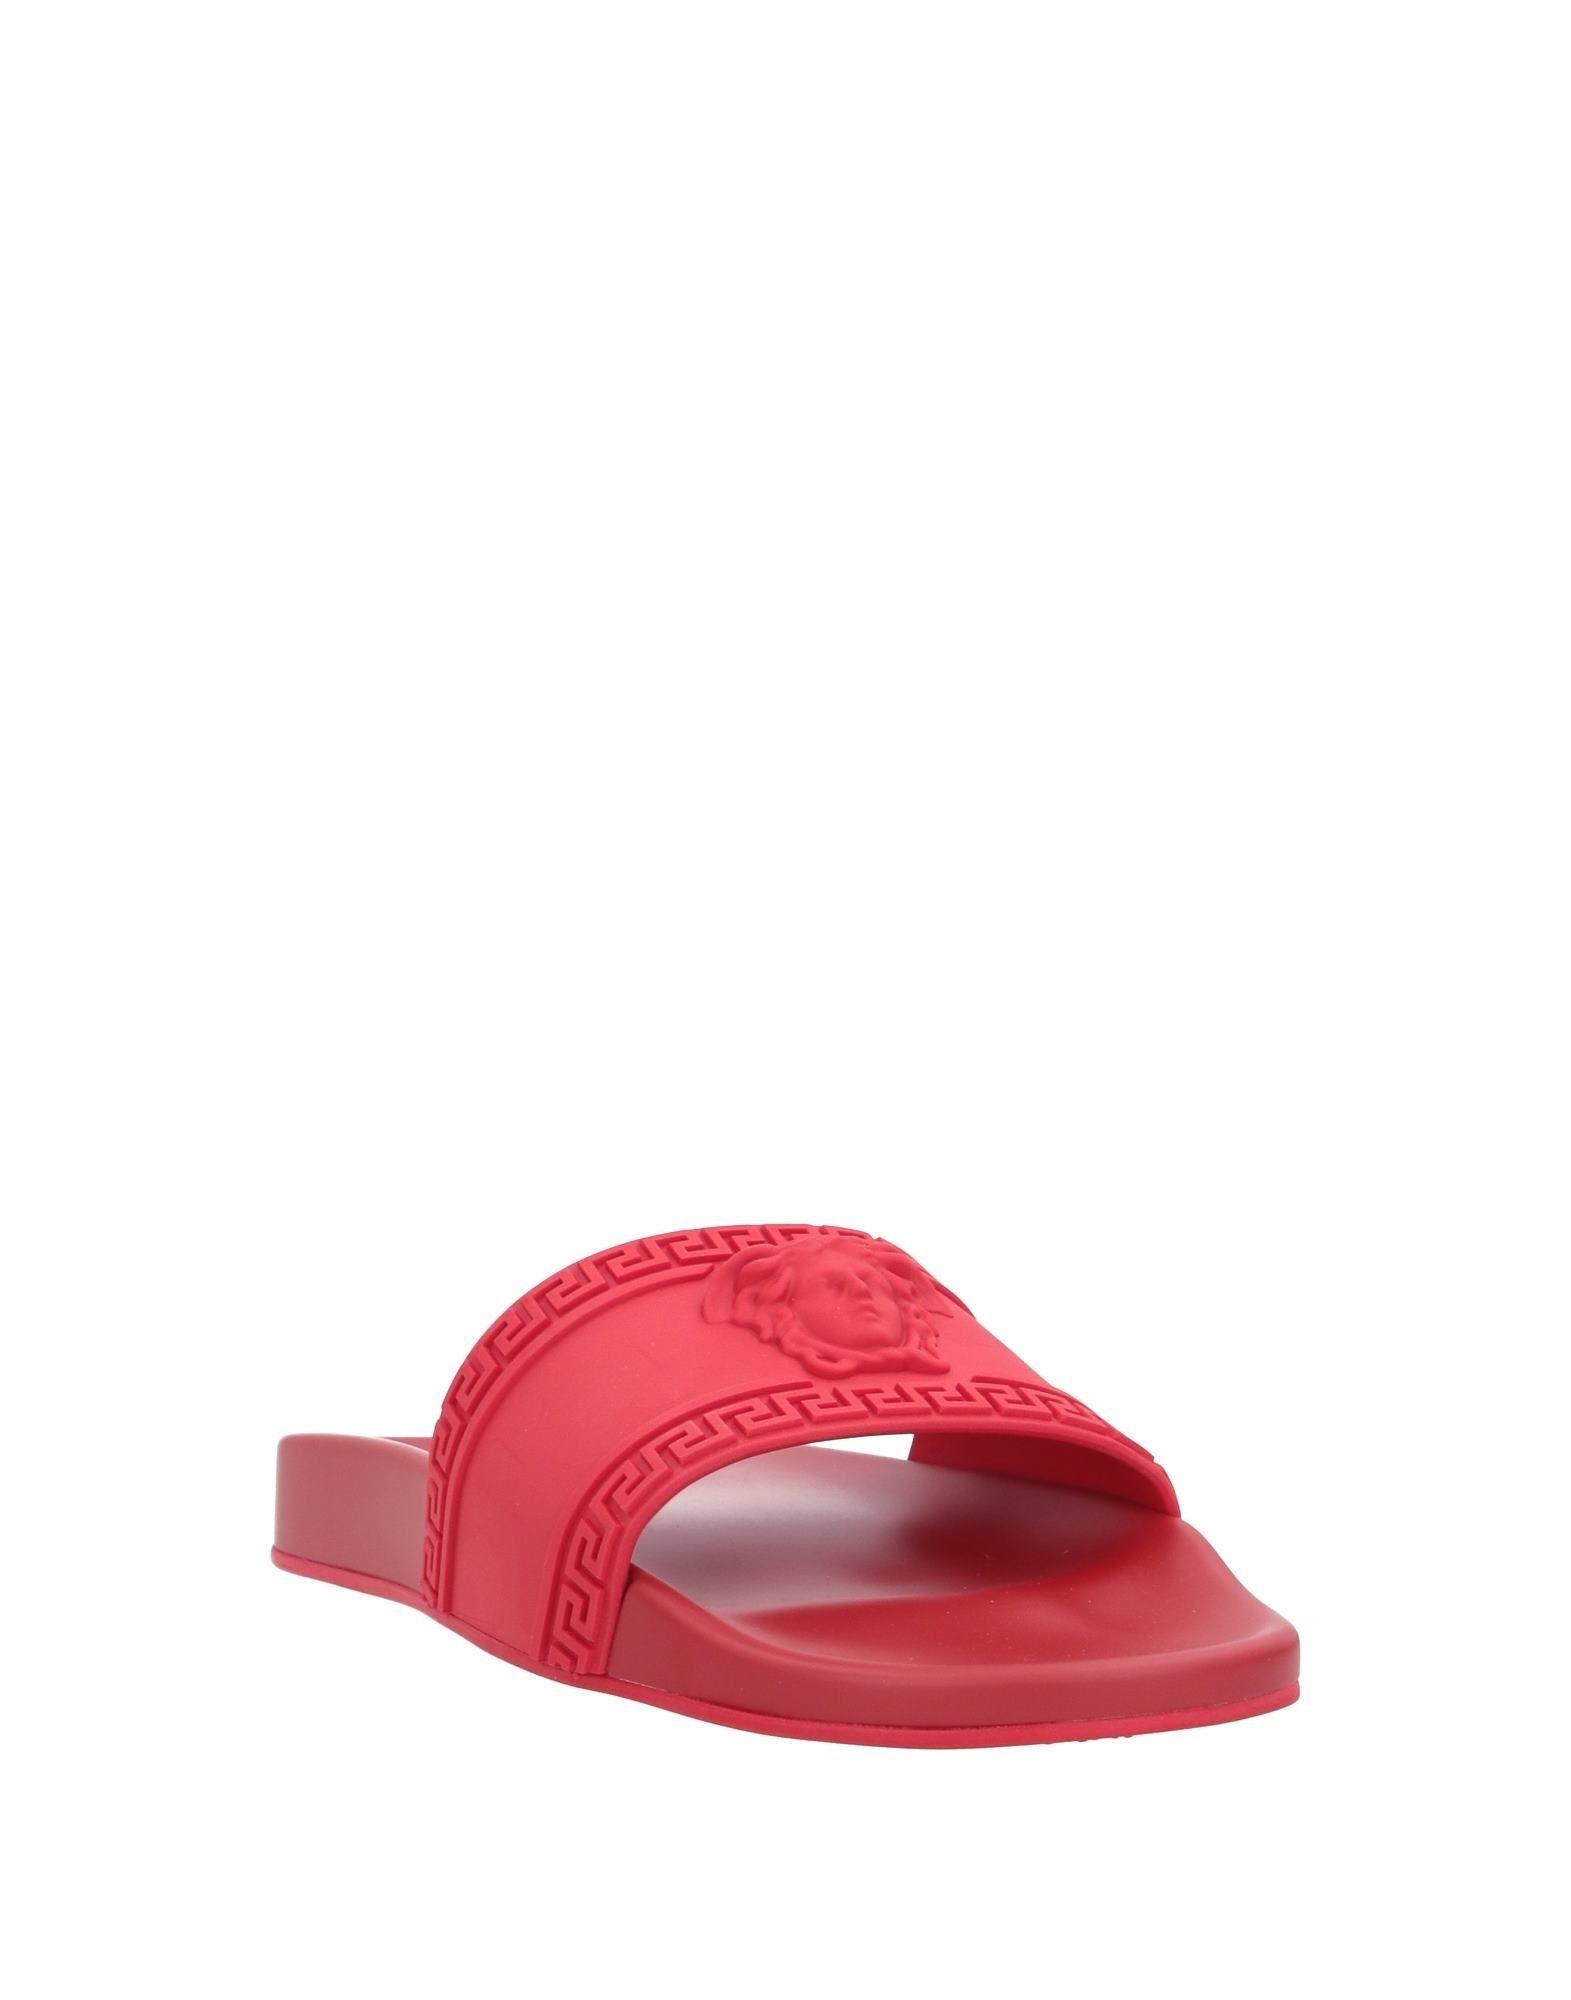 Versace Medusa-Head PVC Slides in Red for Men - Lyst